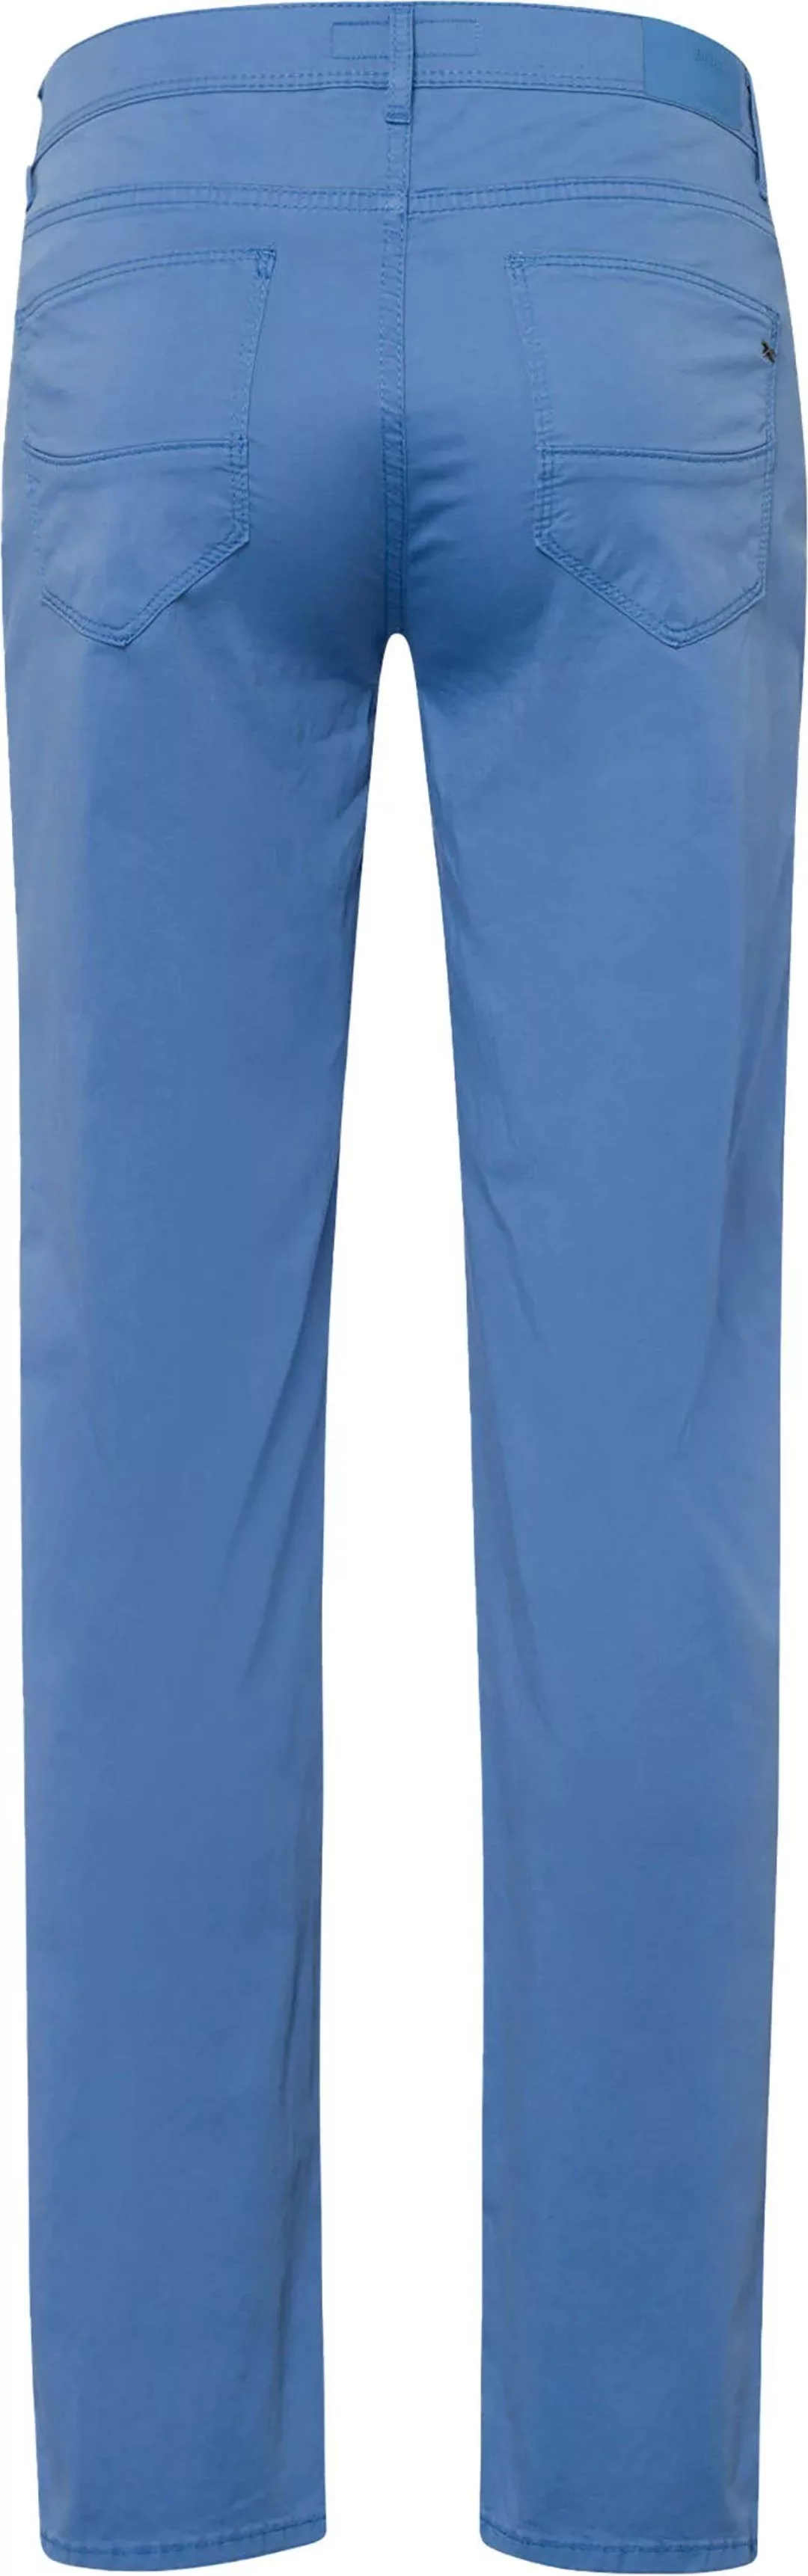 Brax Cadiz Hose Blau - Größe W 34 - L 34 günstig online kaufen